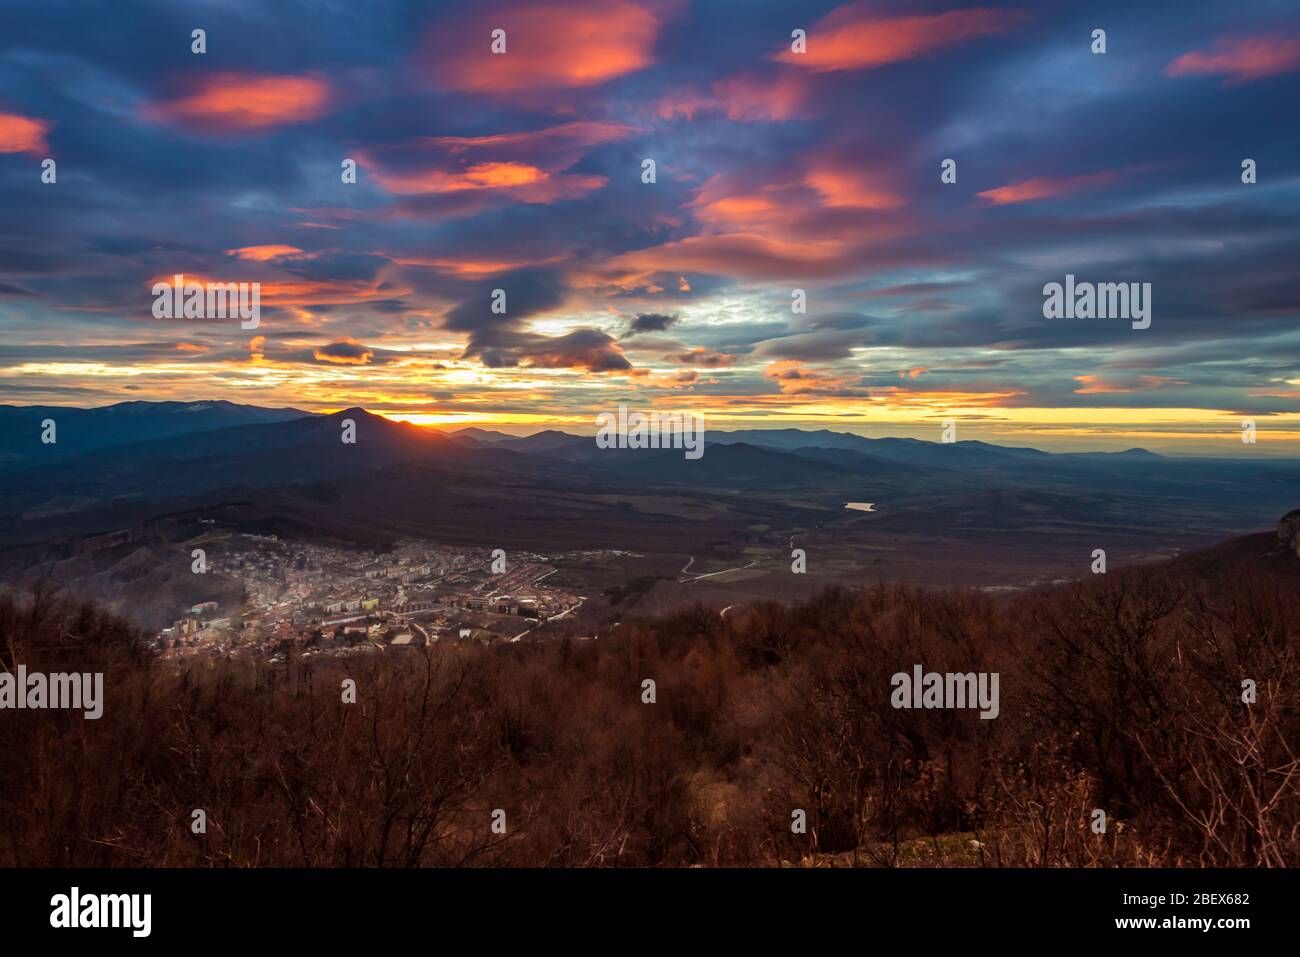 Vue panoramique sur le coucher de soleil rouge sur la ville historique de Belogradchik, dans le nord-ouest de la Bulgarie, prise de vue depuis la tour de télévision Banque D'Images